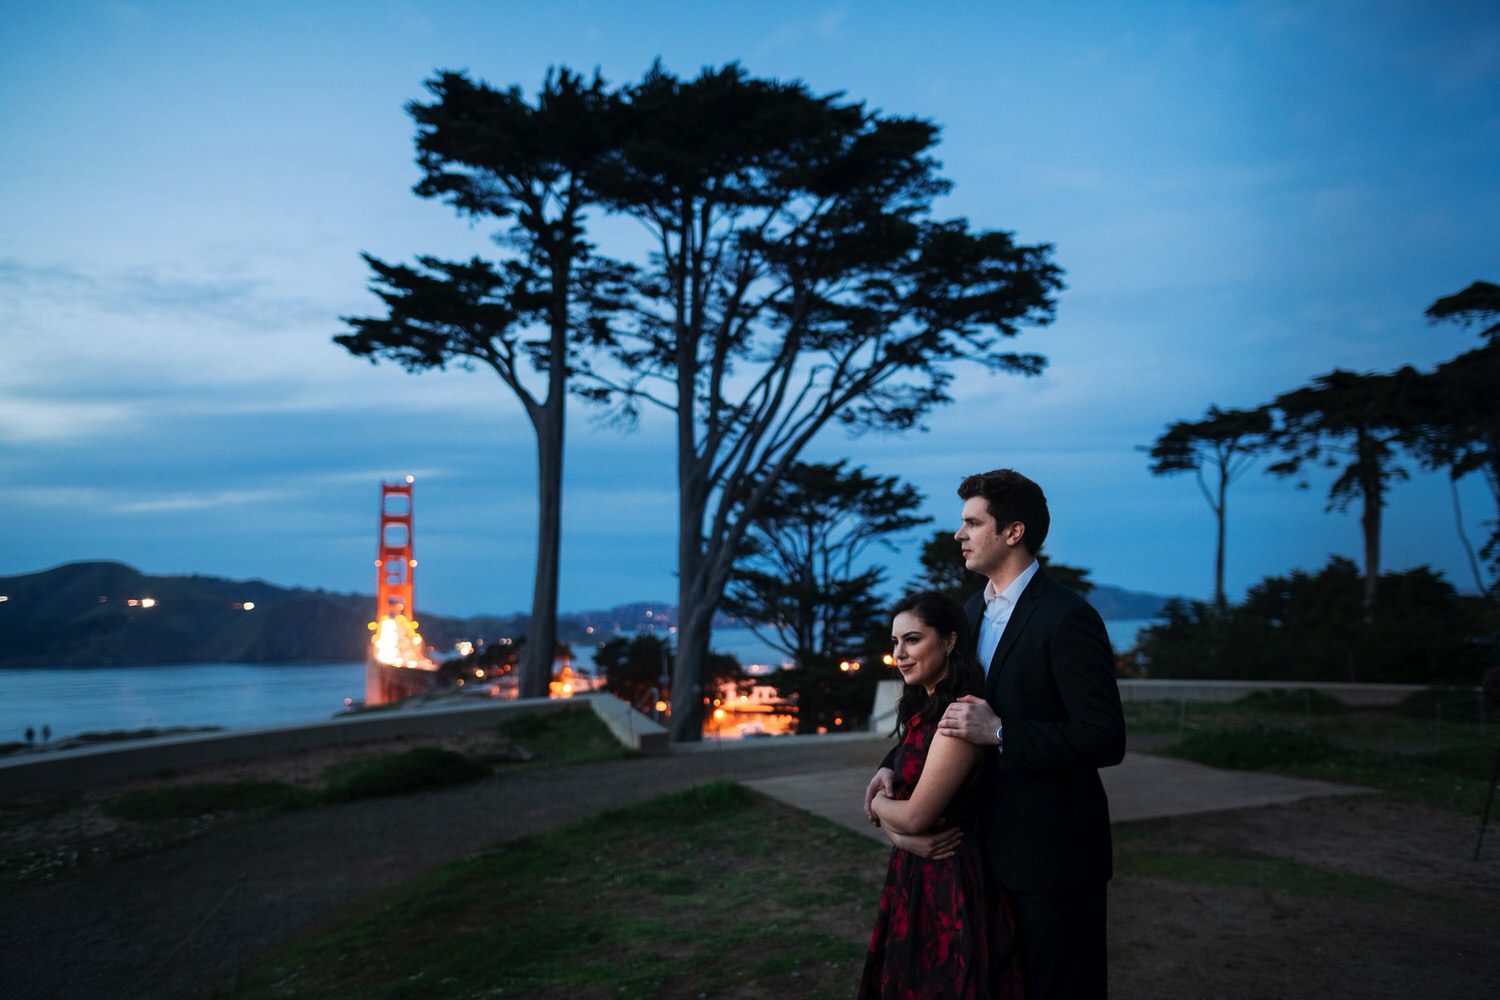  San Francisco Engagement Session

Trung Hoang Photography // San Francisco Bay Area Wedding Photographer 